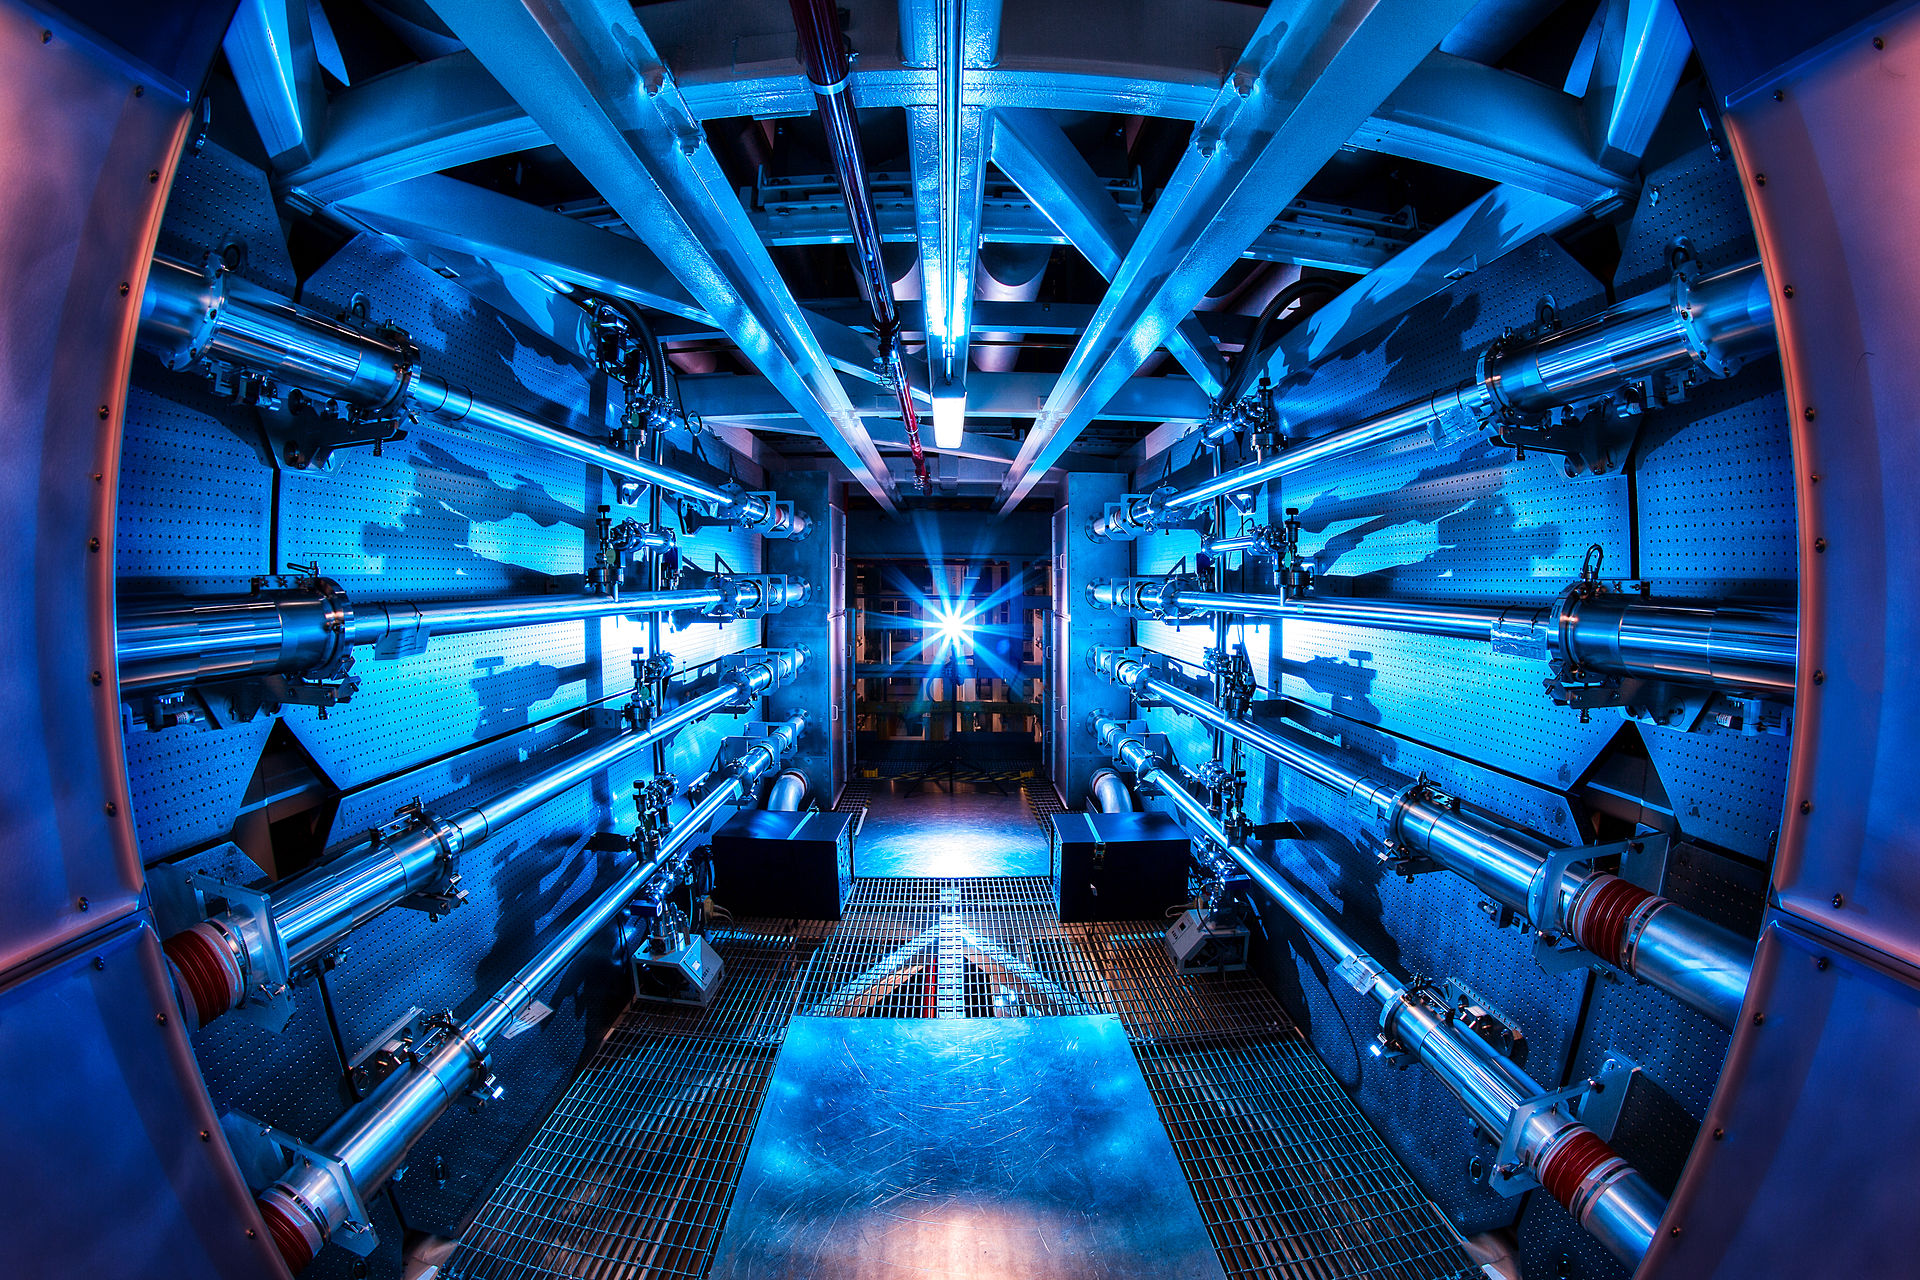 Megdőlt a fúziós energia rekordja, több mint tízbilliárd wattos teljesítményt sikerült elérni